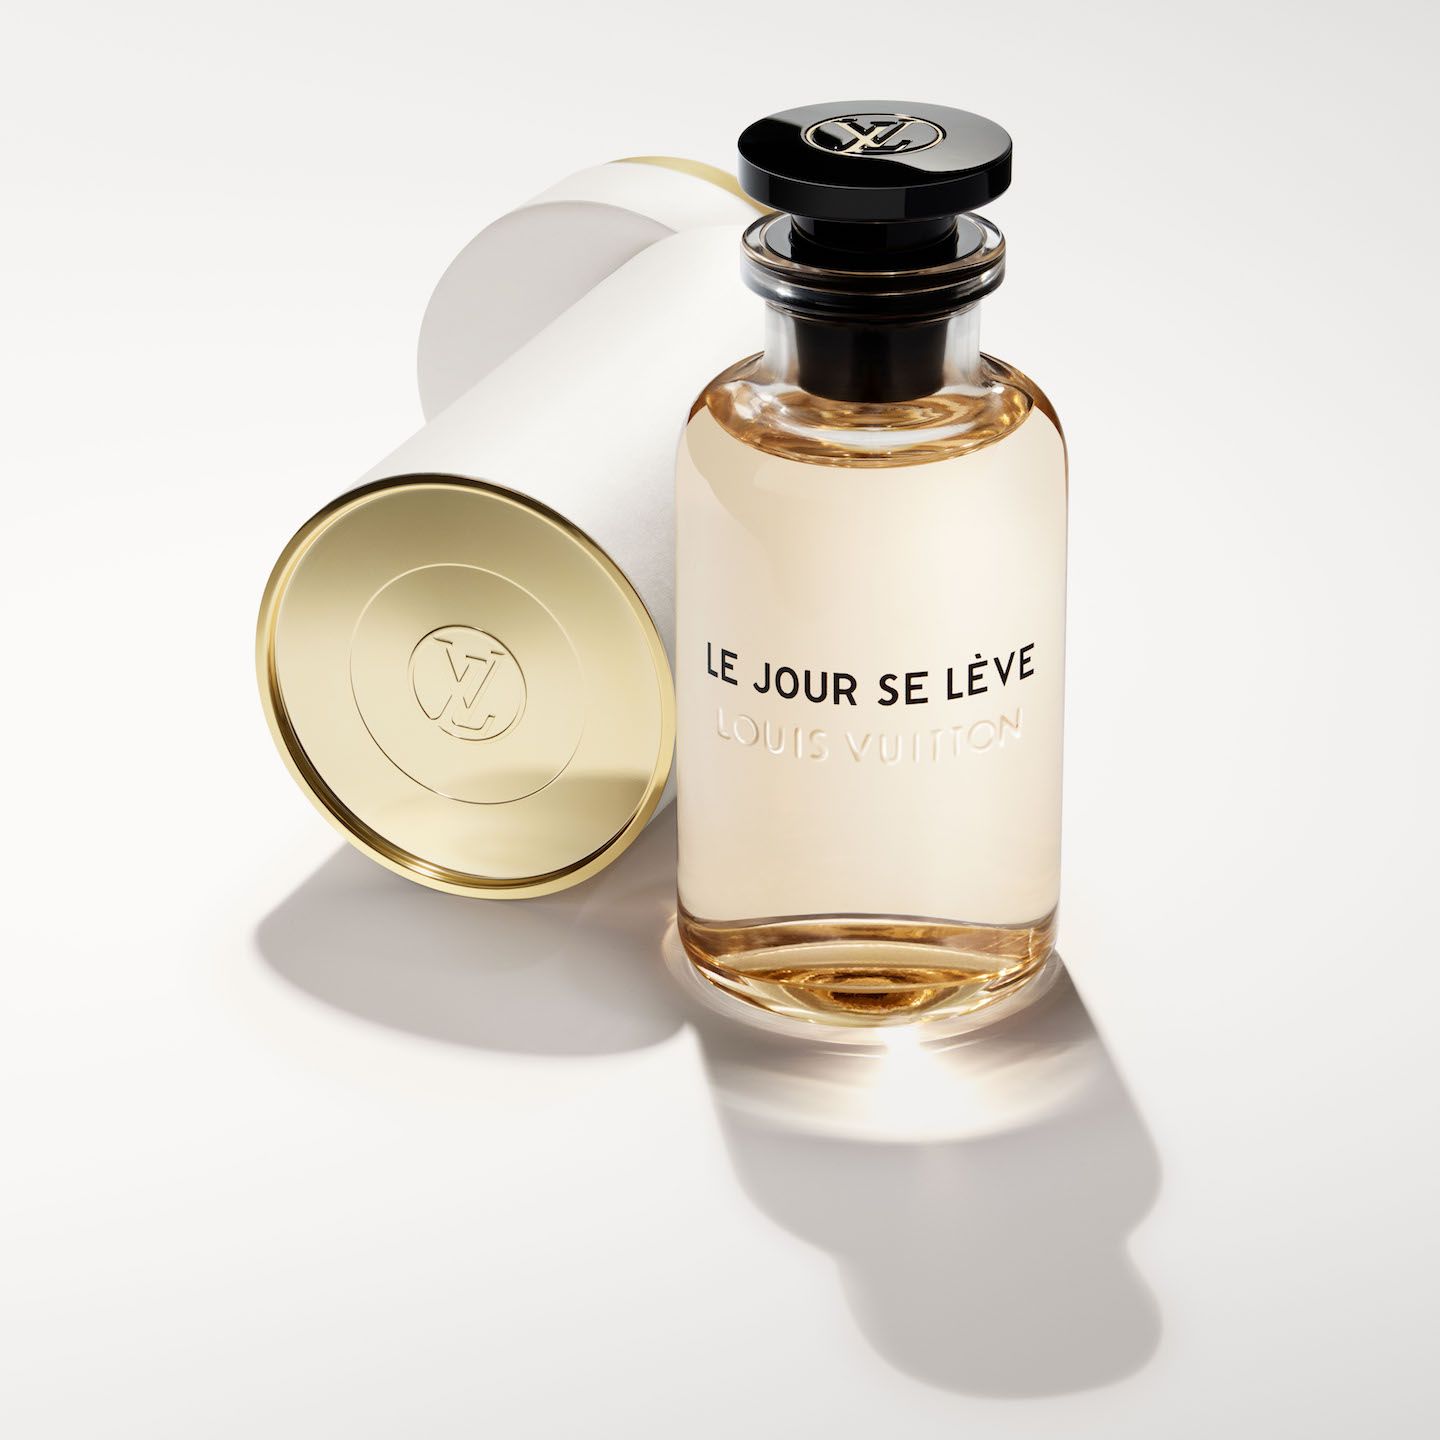 ルイ・ヴィトンの旅をイメージした香水「ルジュール・スレーヴ」は 